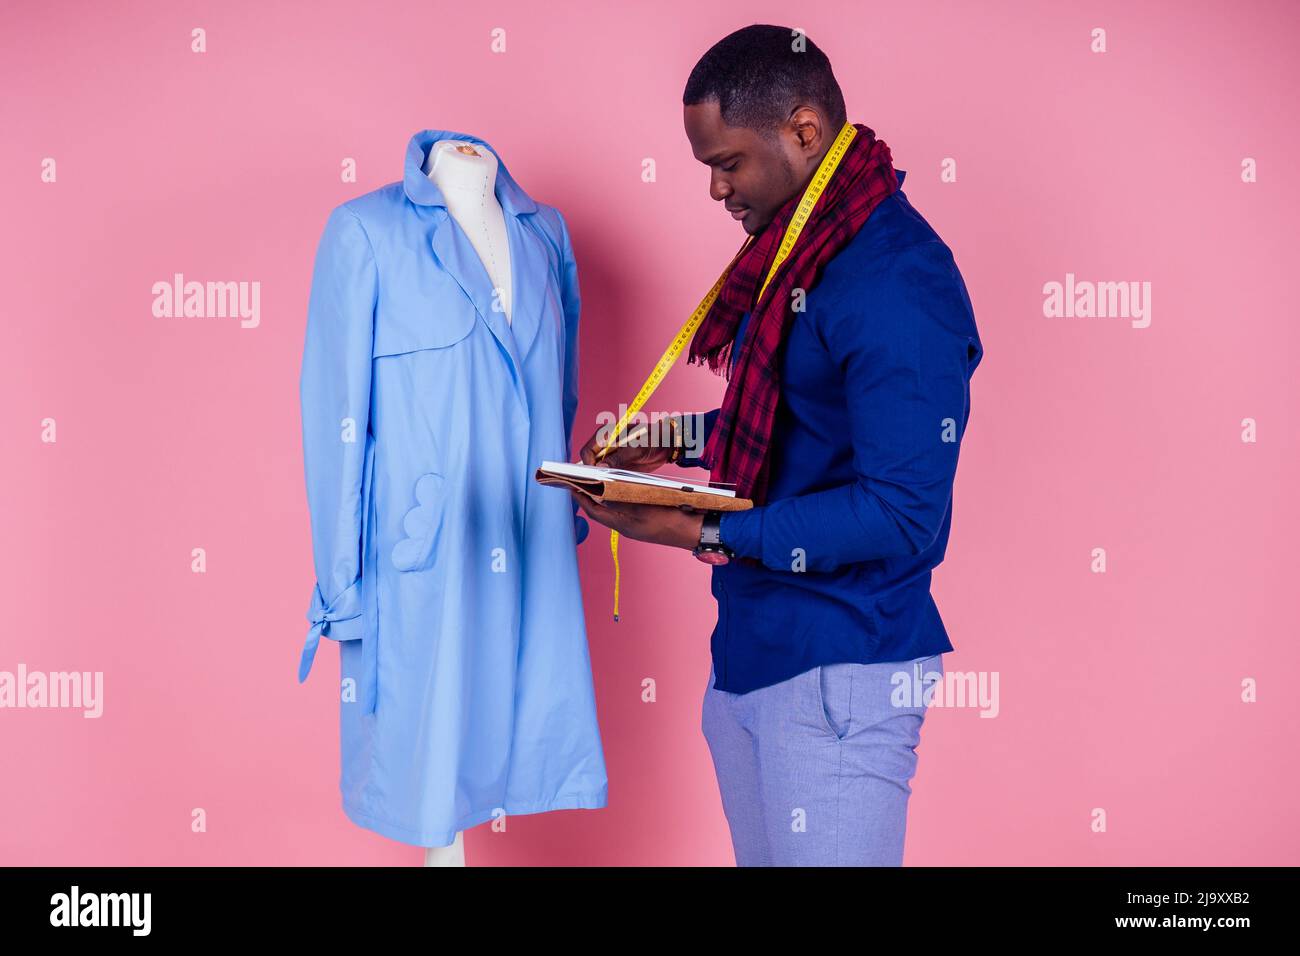 Un homme américain travaillant dans un atelier sur mesure rade un manteau bleu sur fond rose.jeune designer de mode africain avec mannequin au studio de couture Banque D'Images